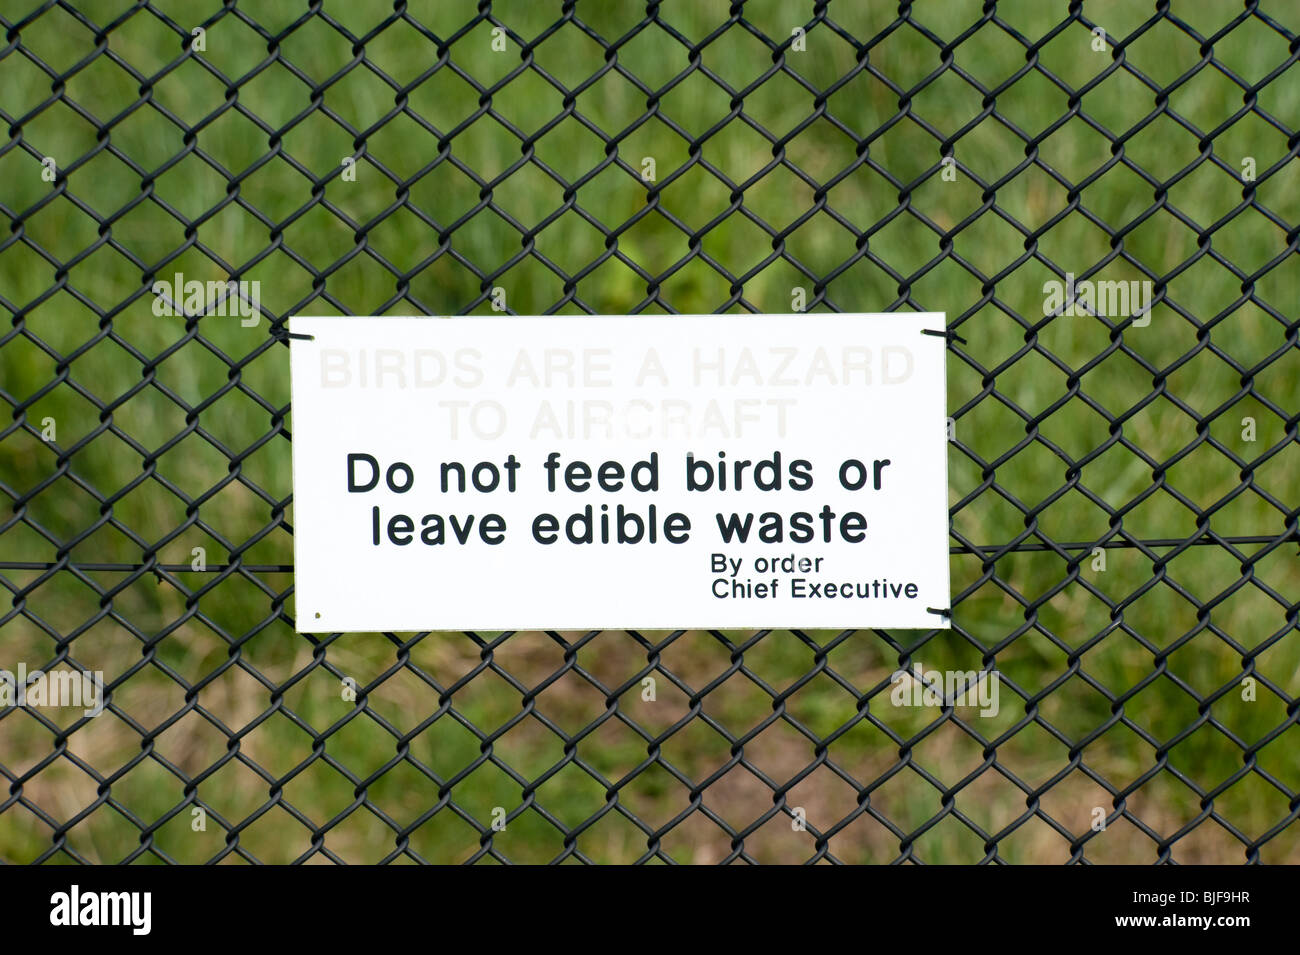 Ne pas nourrir les oiseaux ou de laisser des déchets comestibles - aéroport le panneau d'avertissement Banque D'Images